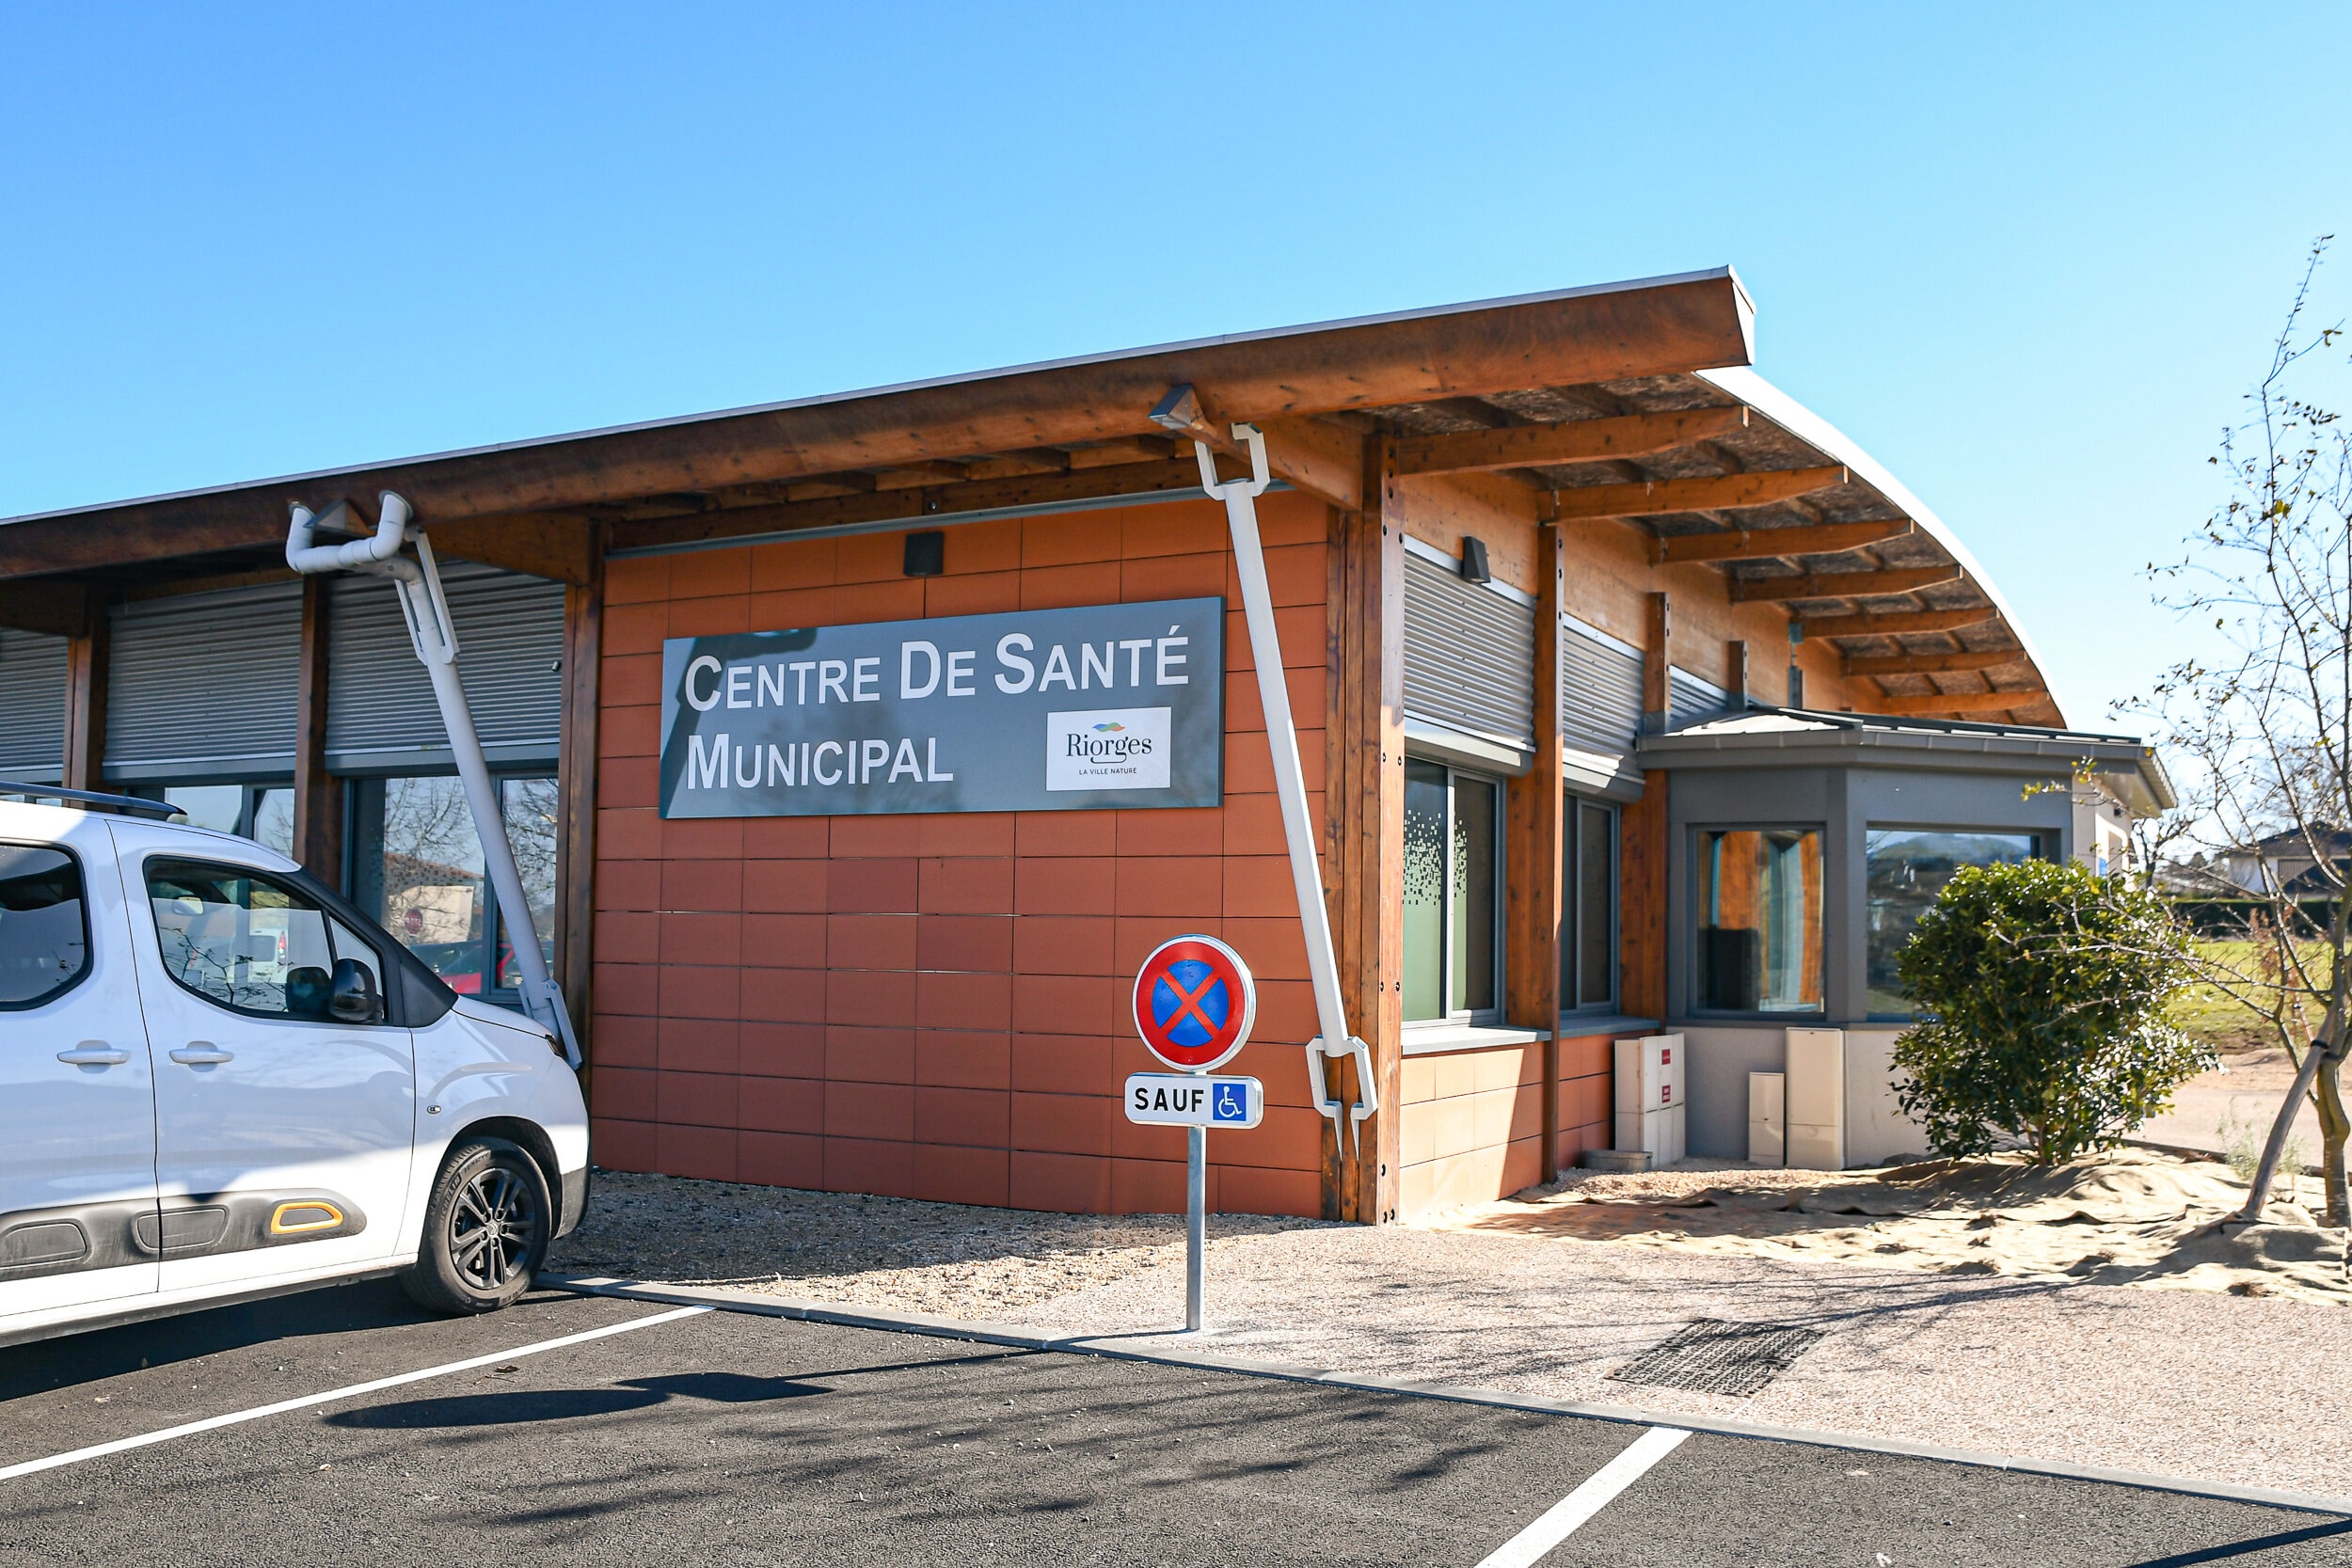 Centre de santé municipal Riorges